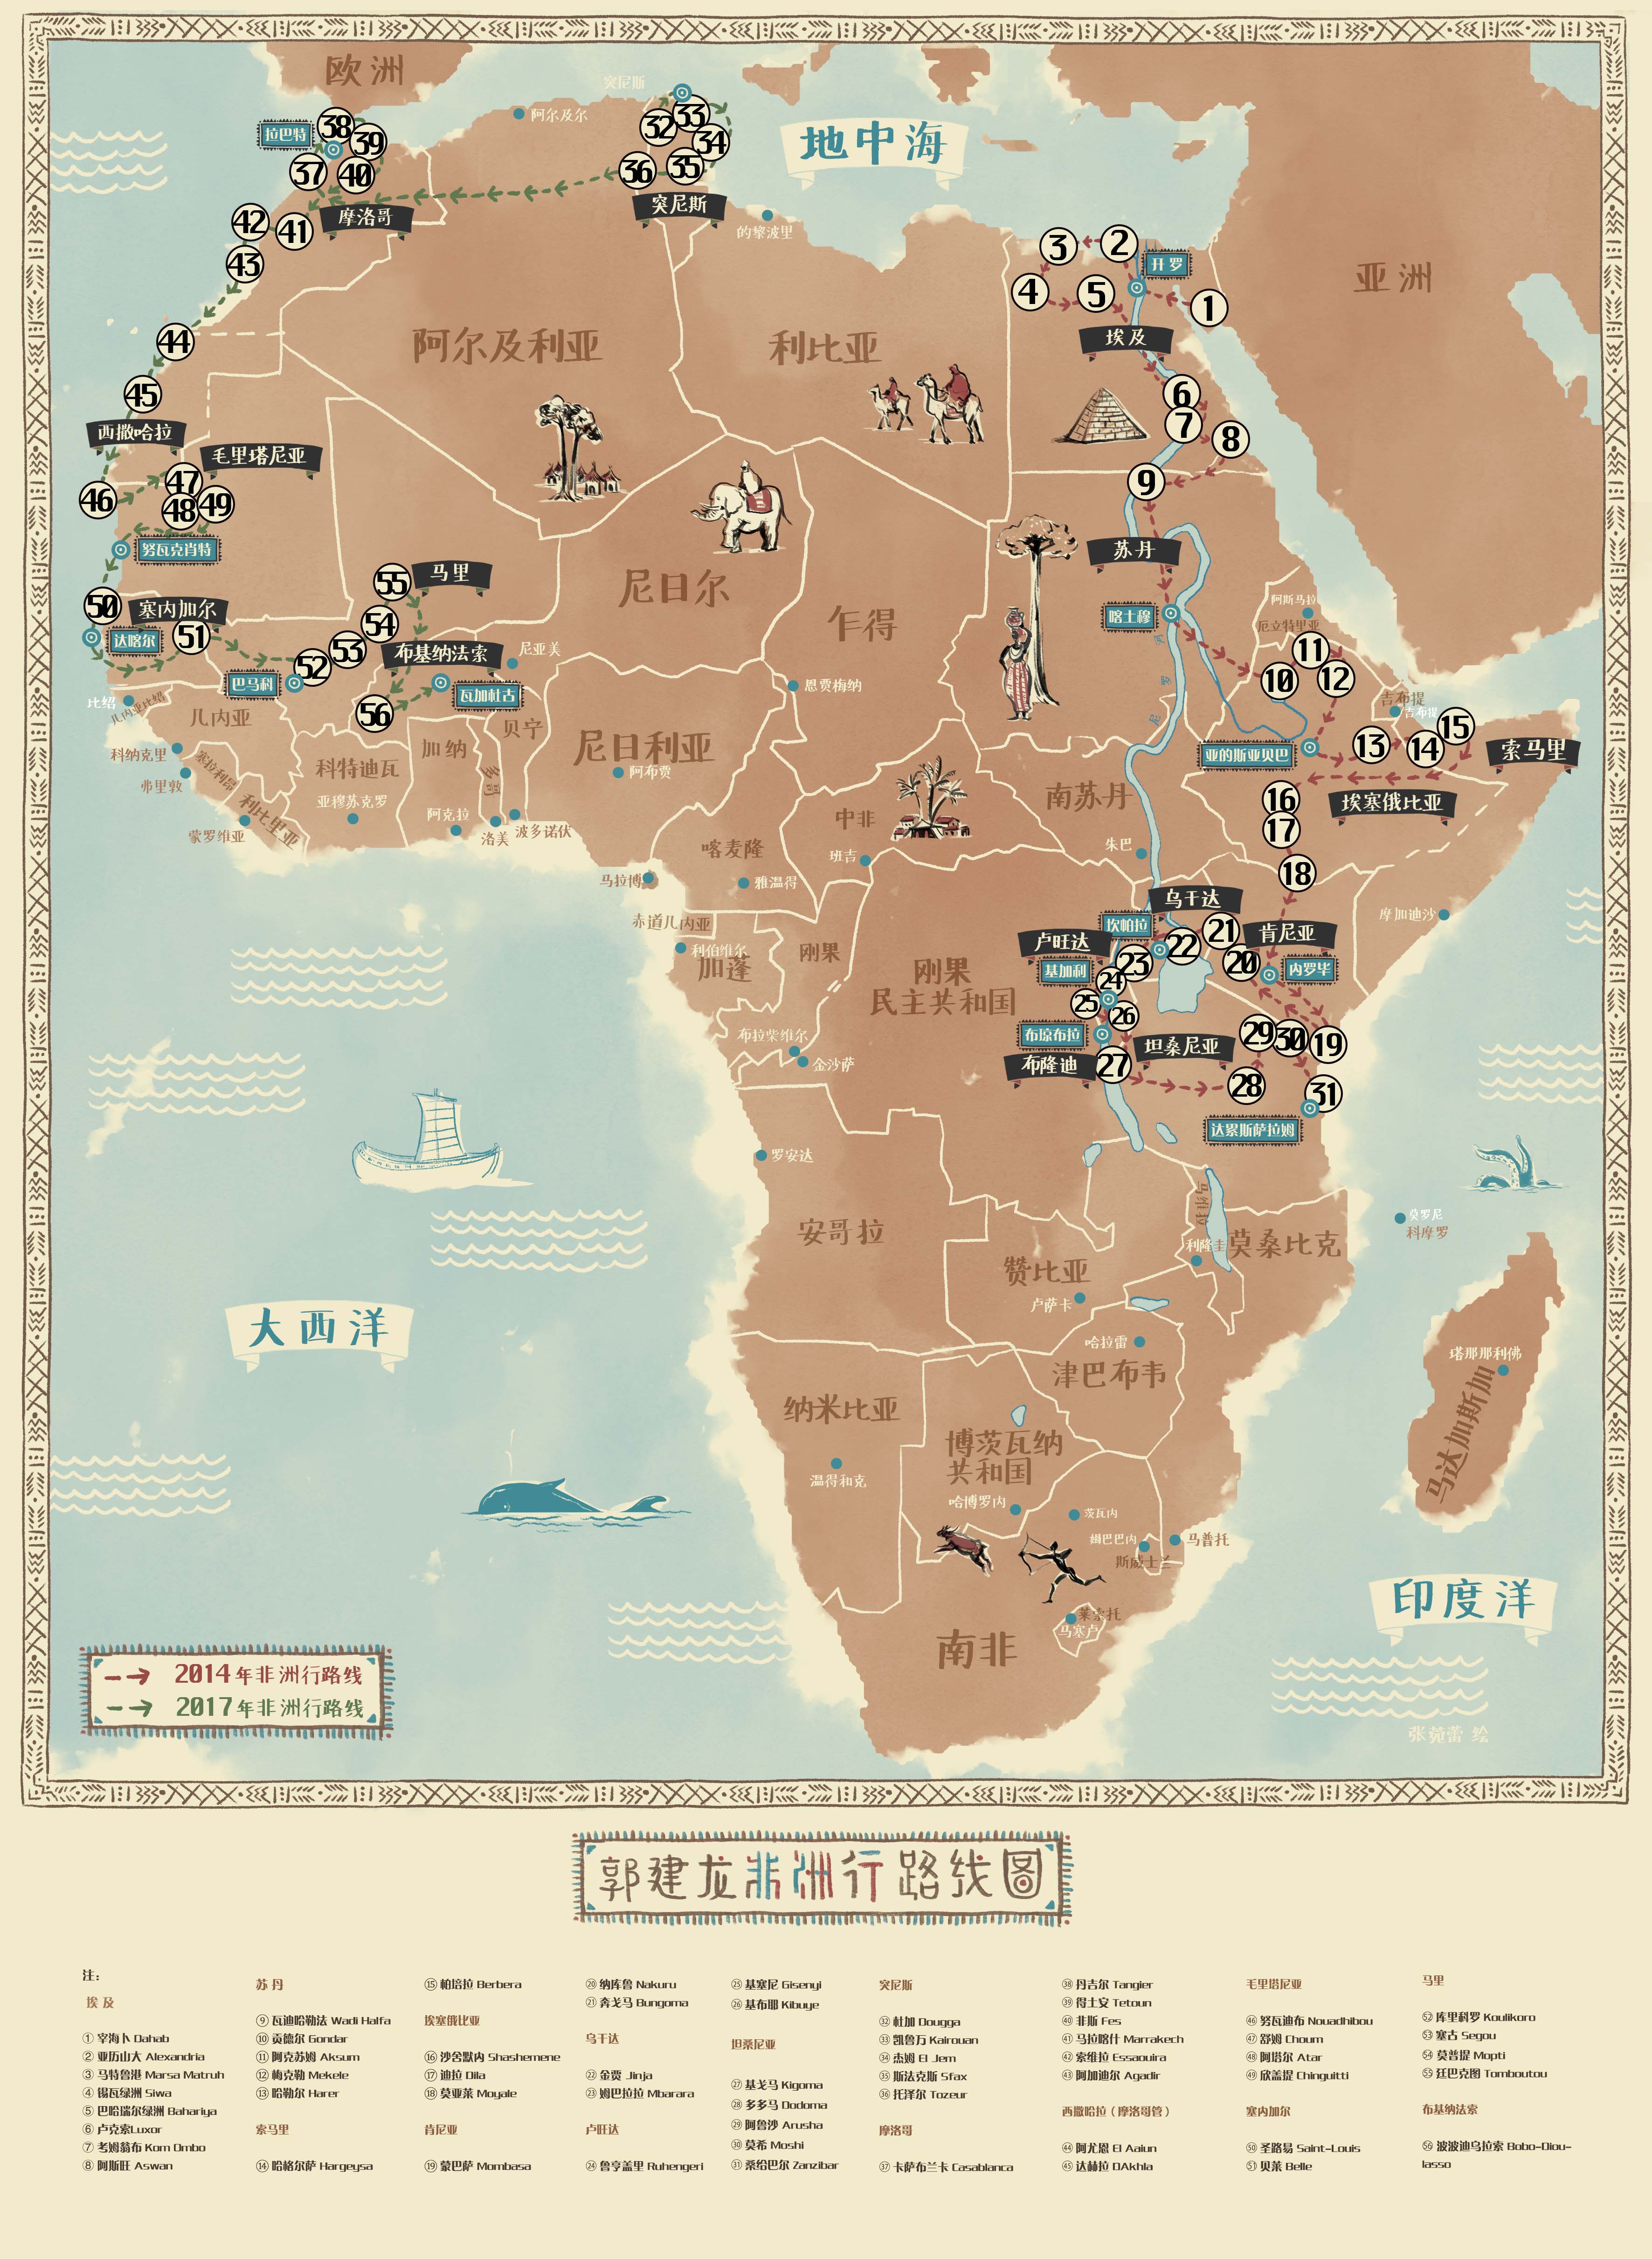 游历17个50多座城市,他以的视角深度观察非洲